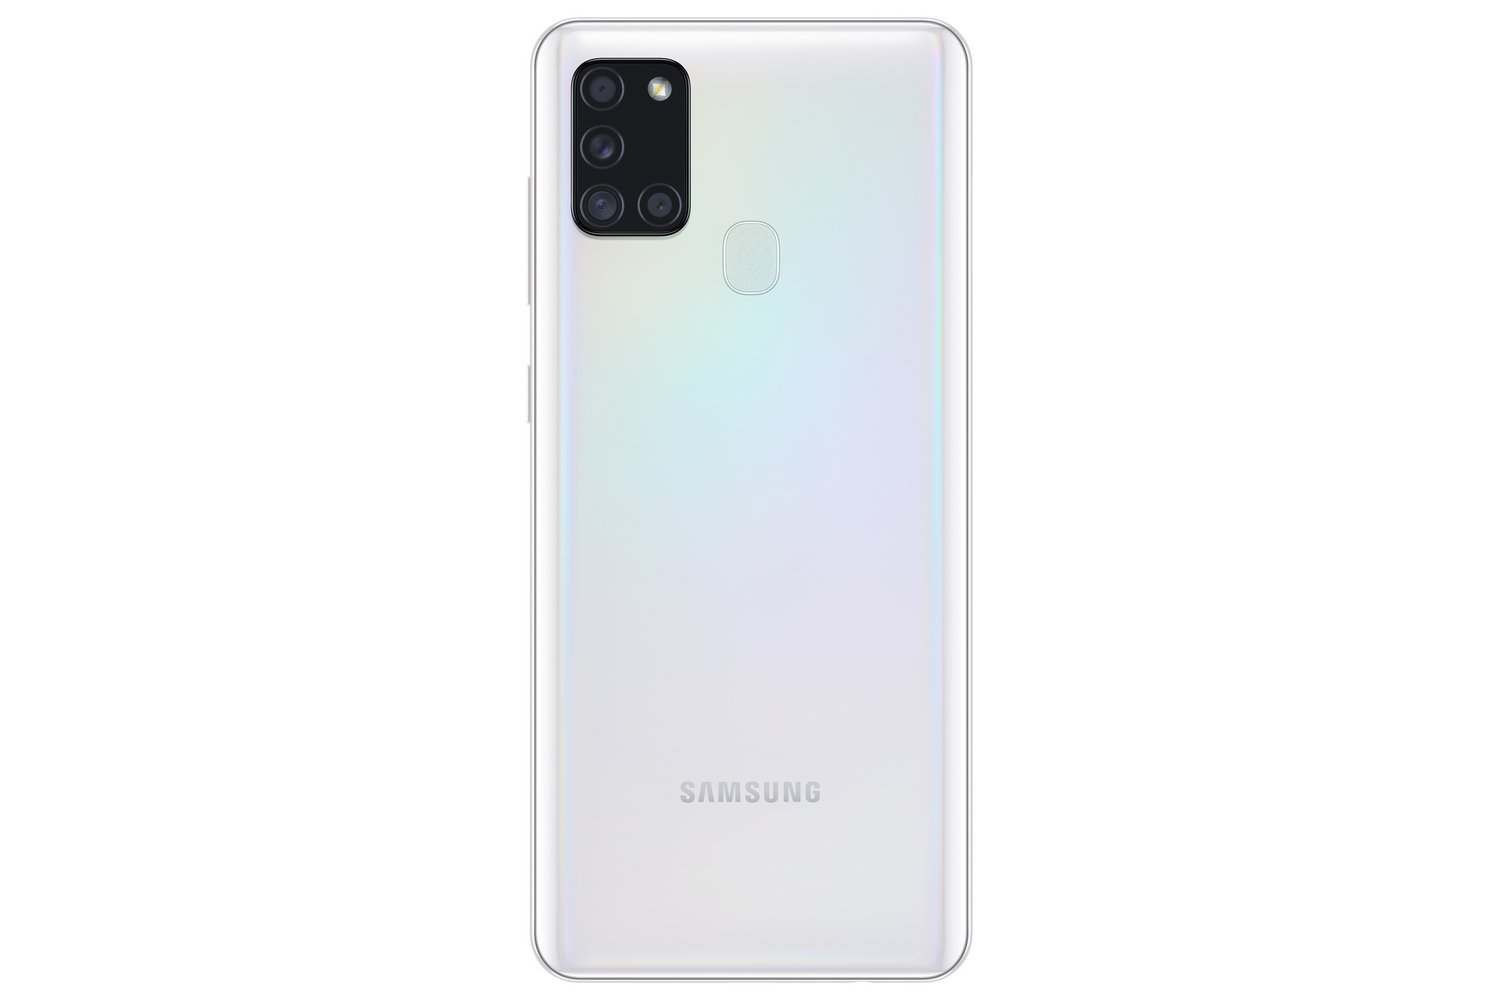 potrošnja zbivati Komunikacijska mreža  Samsung Galaxy A21s specs, review, release date - PhonesData